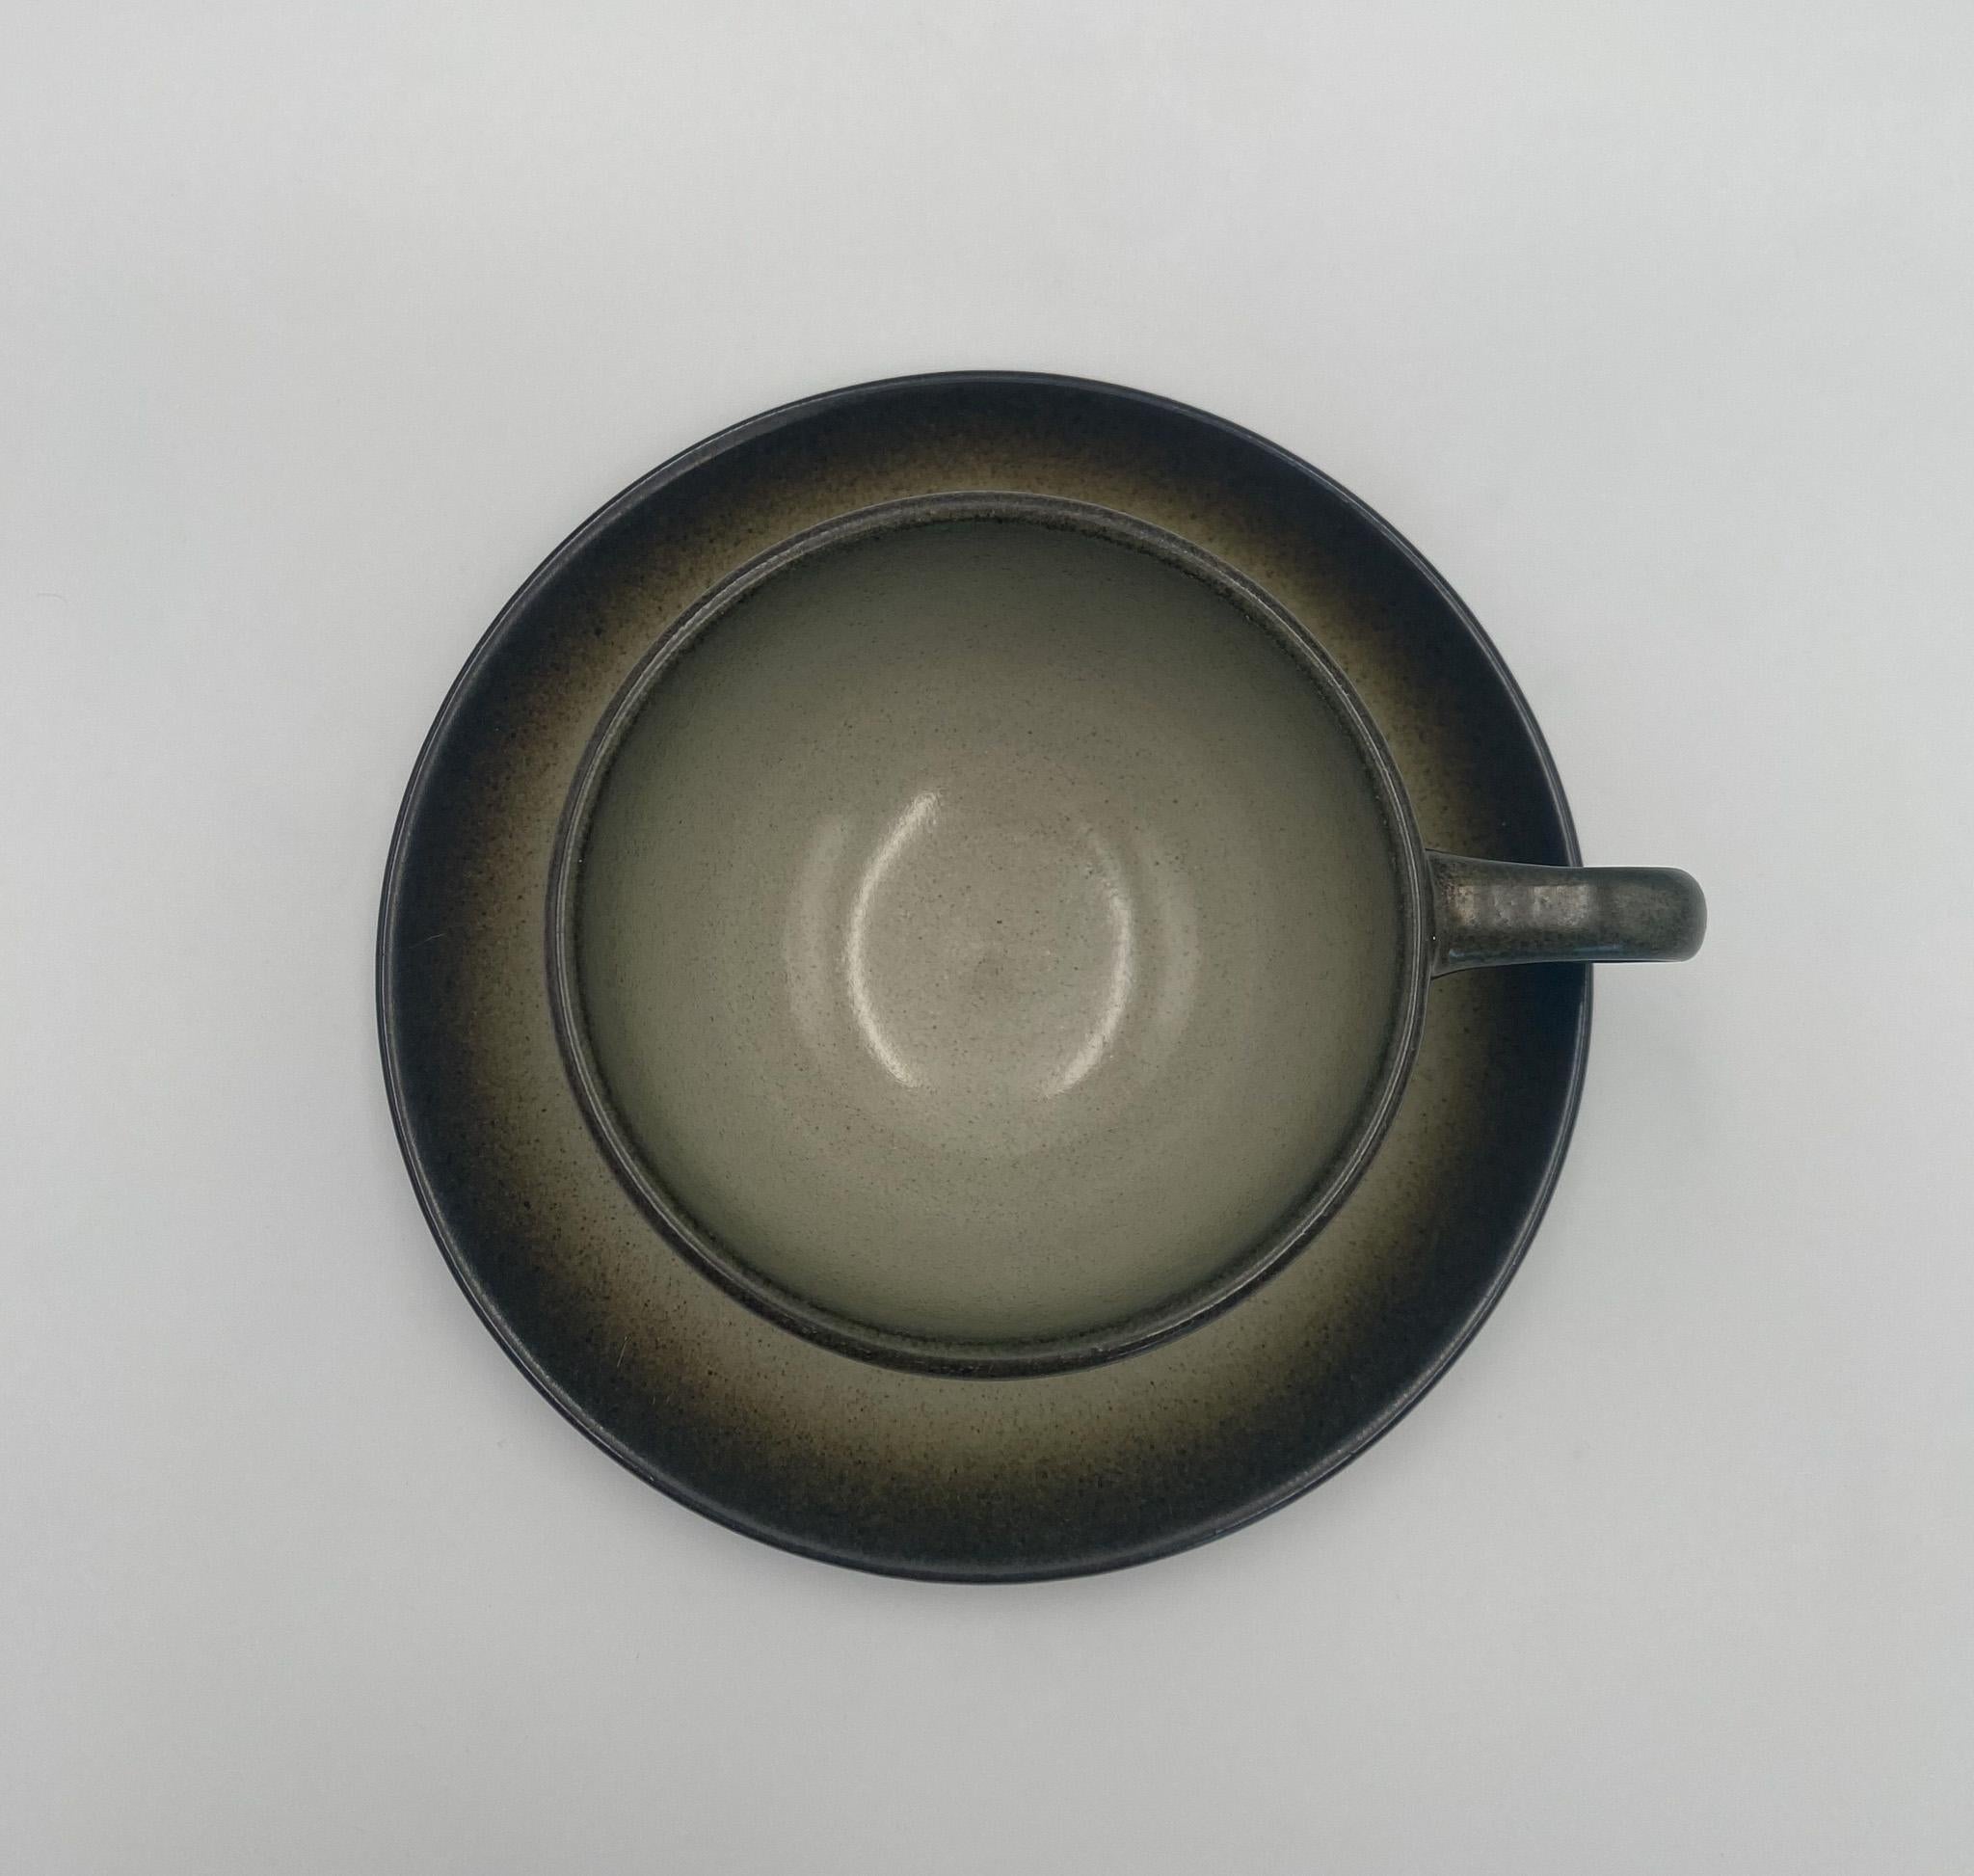 Edith Heath Coupe Line Pottery Sea & Sand Ceramic Cup & Saucer, c.1960. 

The tea cup measures: 5